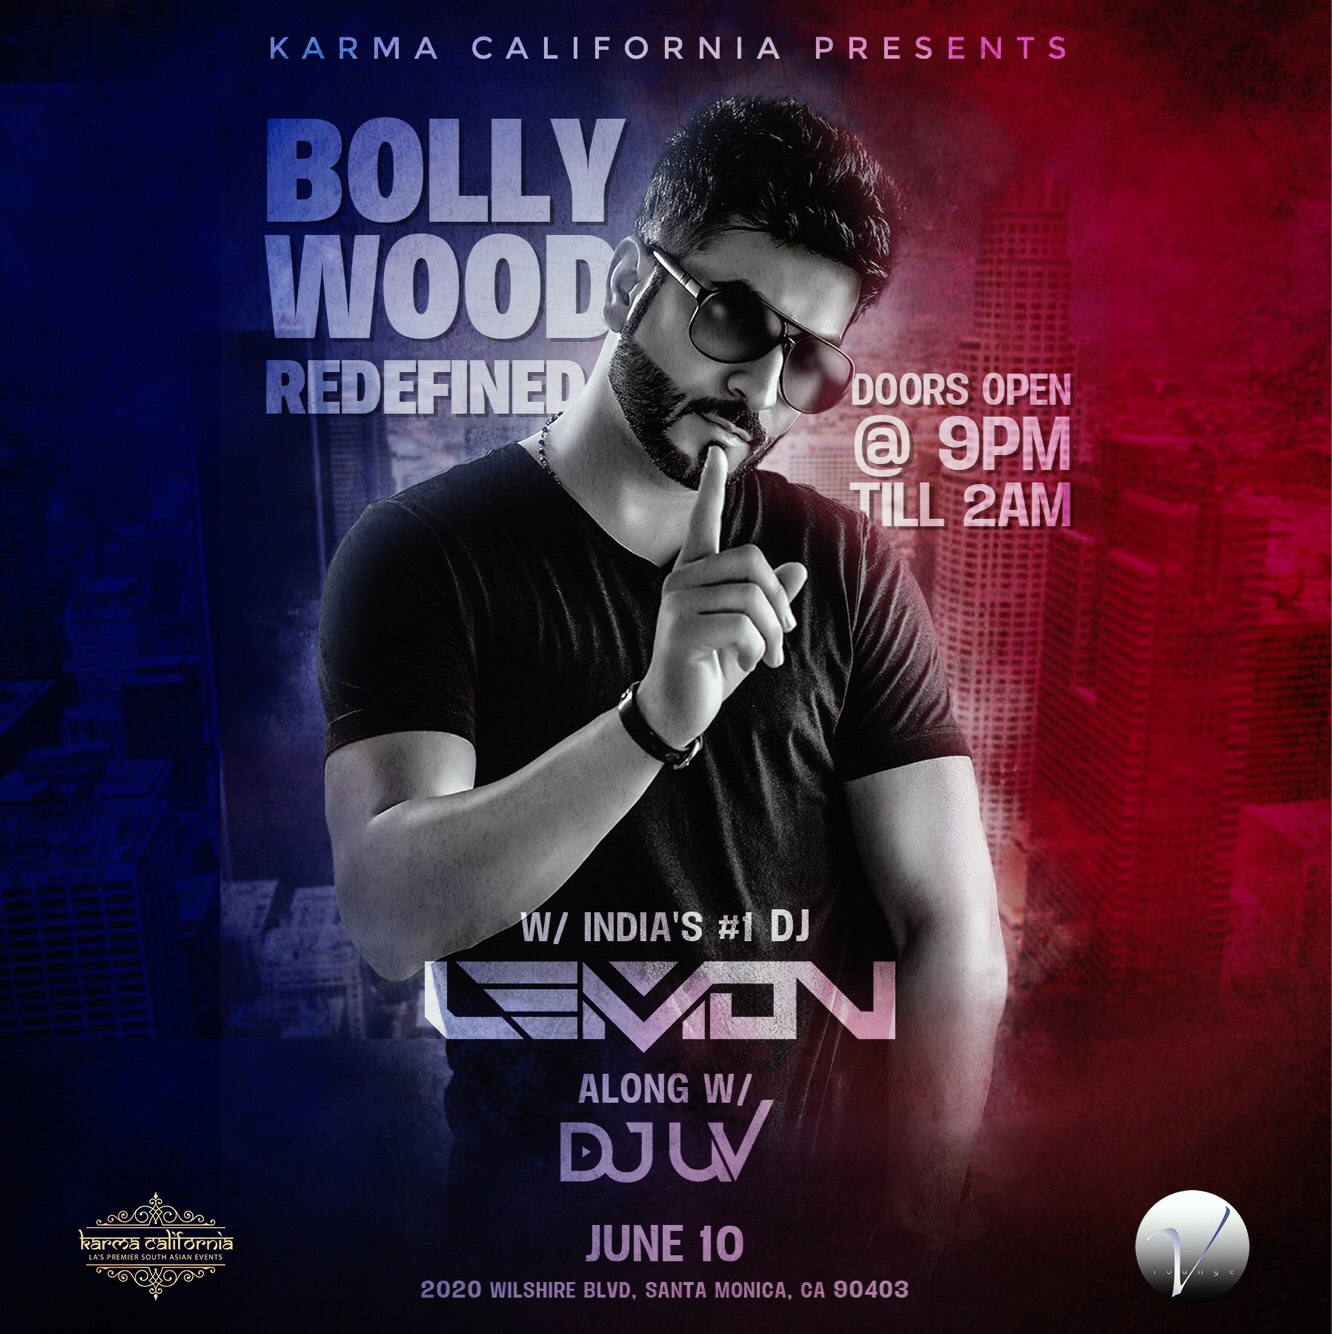 Bollywood Redefined w/ India's #1 Dj LEMON along w/ Dj UV